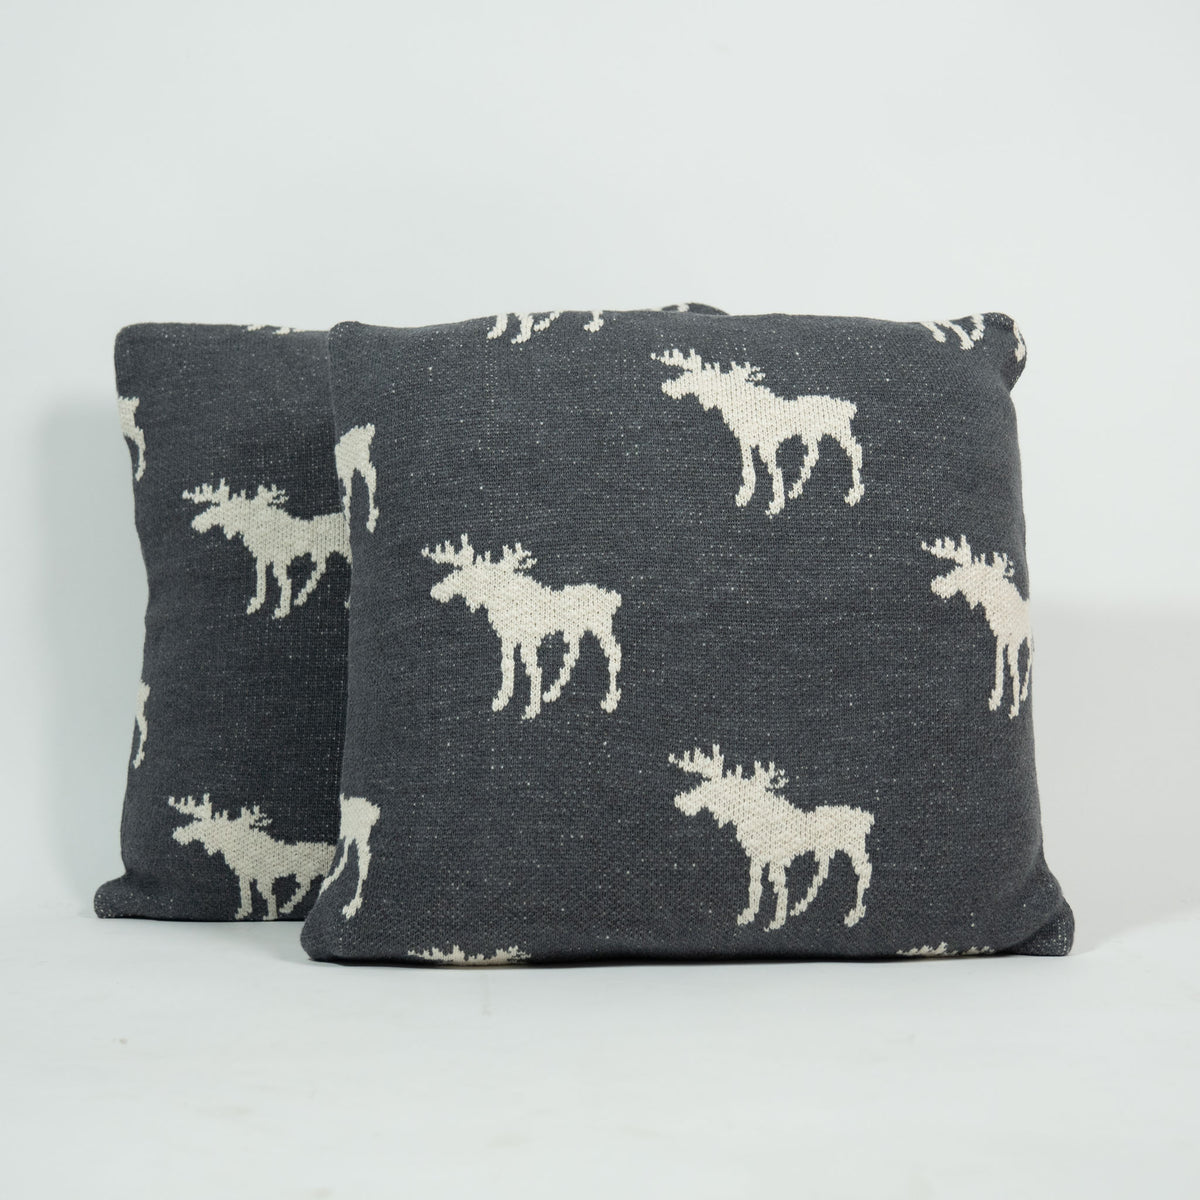 Buy Online Reindeer Cushion Cover